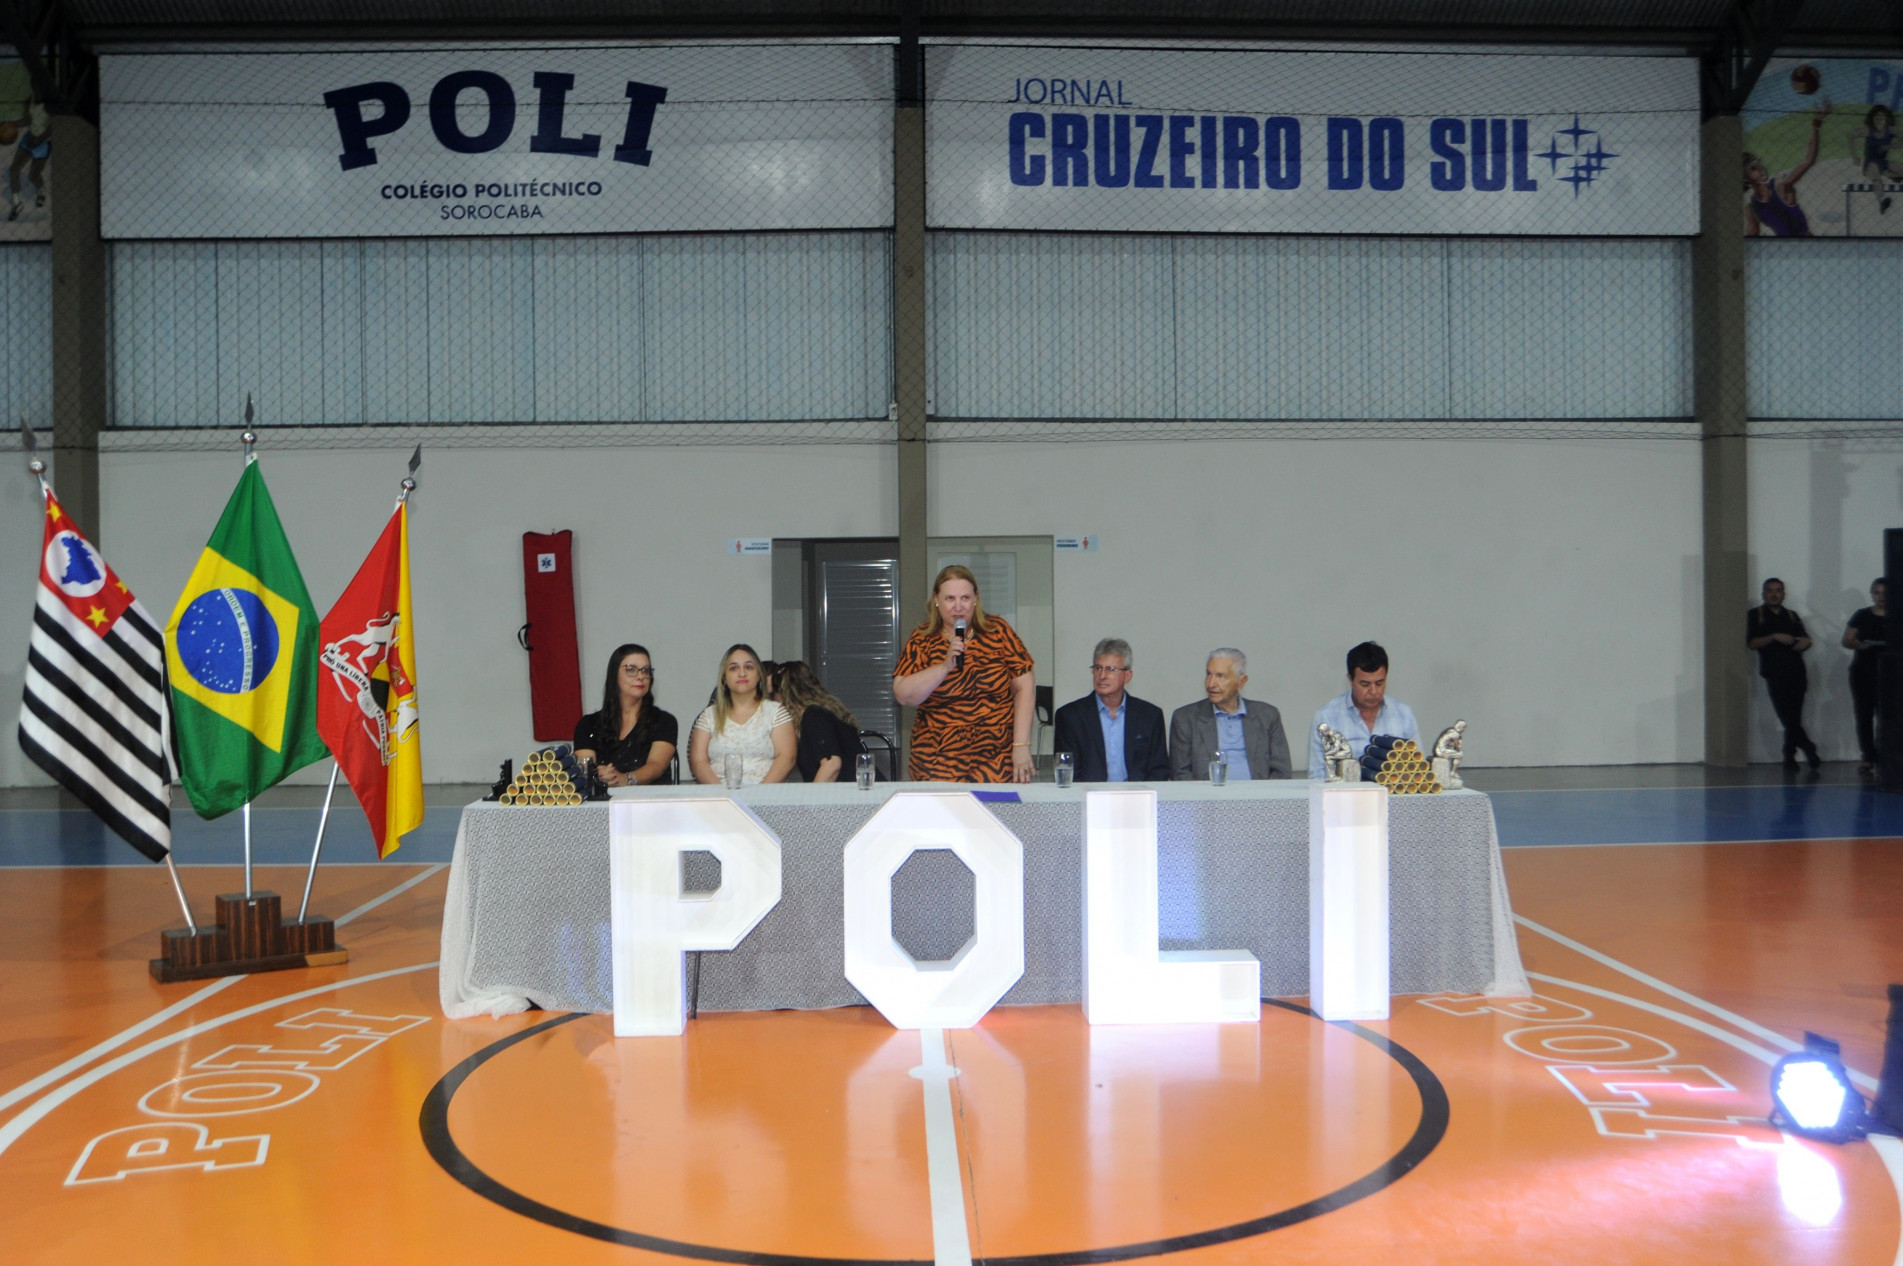 Evento ocorreu em dois lugares, no Espaço Festivo Monteiro Lobato e no ginásio poliesportivo da unidade Alto da Boa Vista